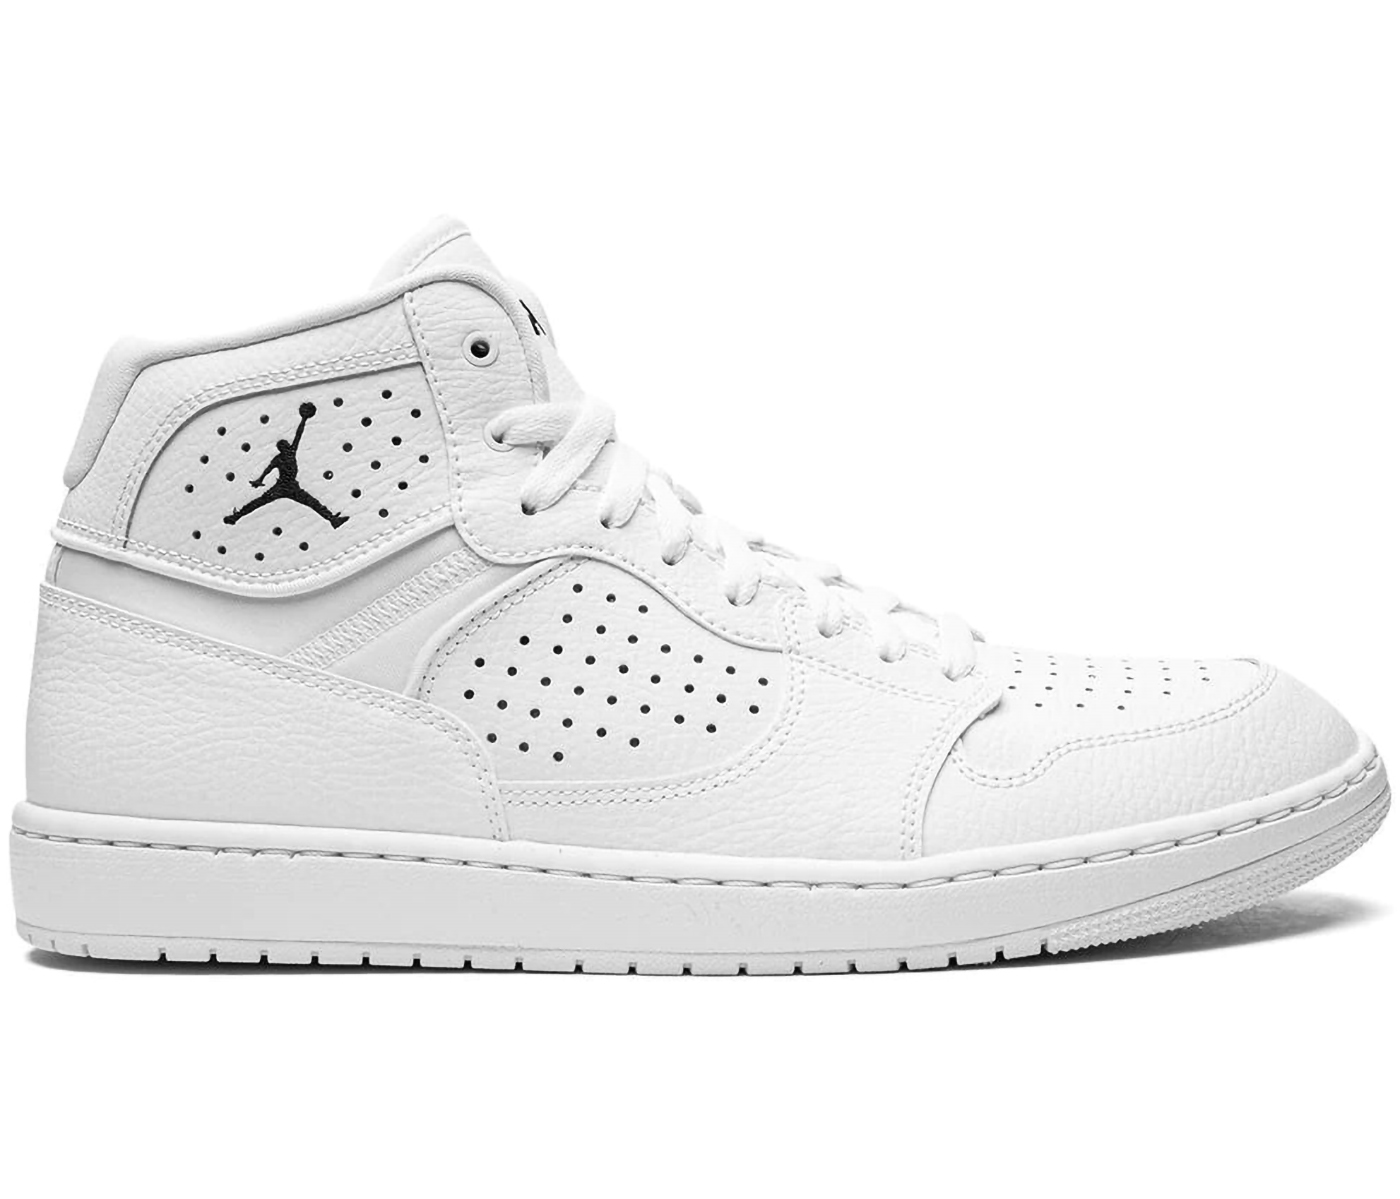 Nike Jordan 1 Air Elevate Low sneakers in gray and white - GRAY | ASOS